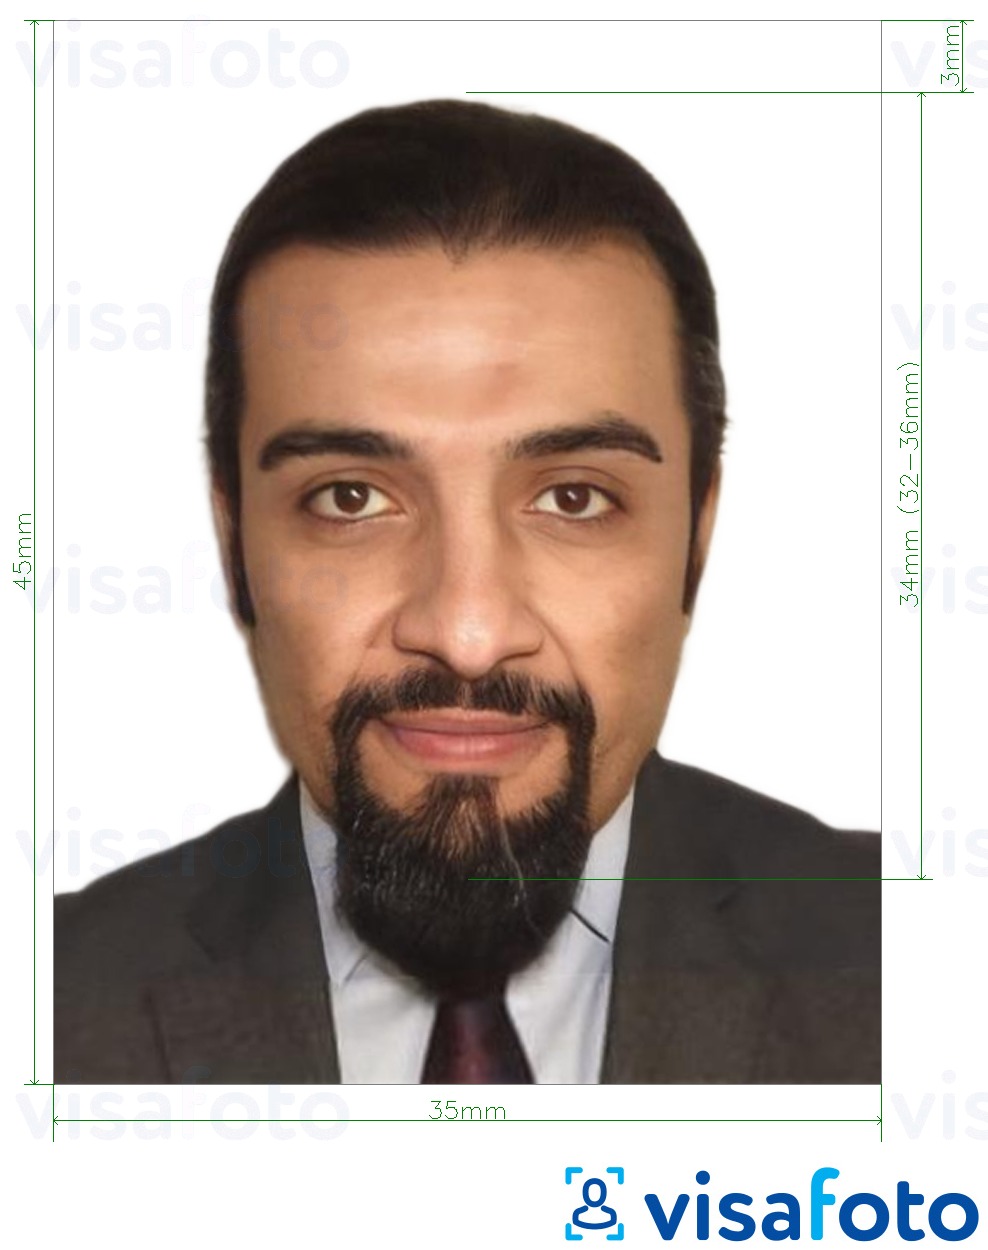 Exemple de foto per a Líban passaport 3,5x4,5 cm (35x45 mm) amb la mida exacta especificada